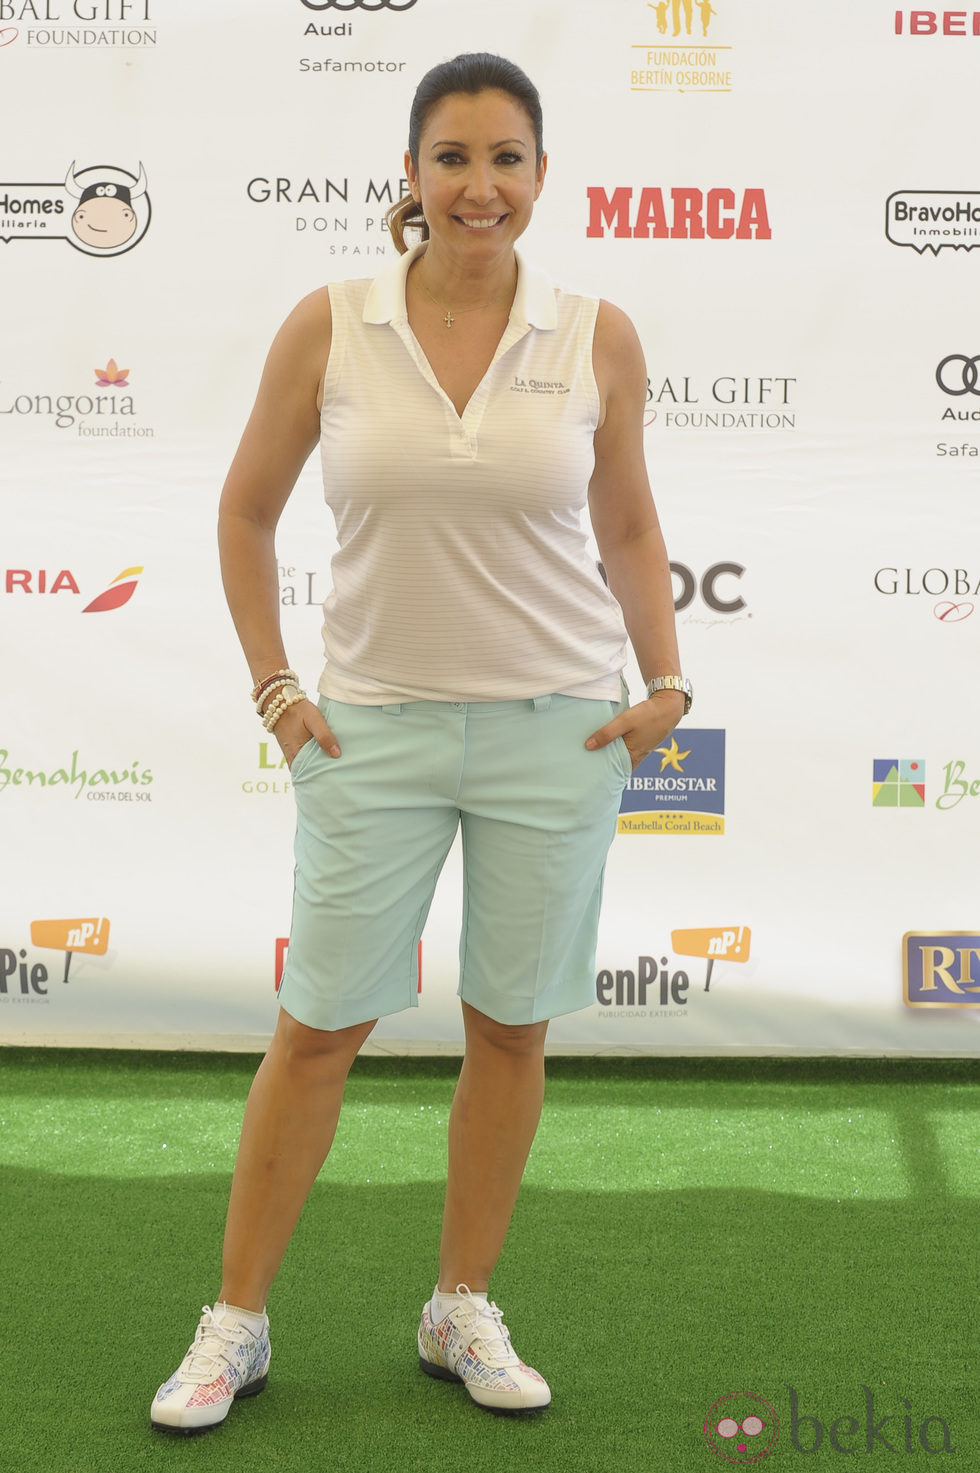 María Bravo en el torneo de golf en Marbella de la Global Gift 2014